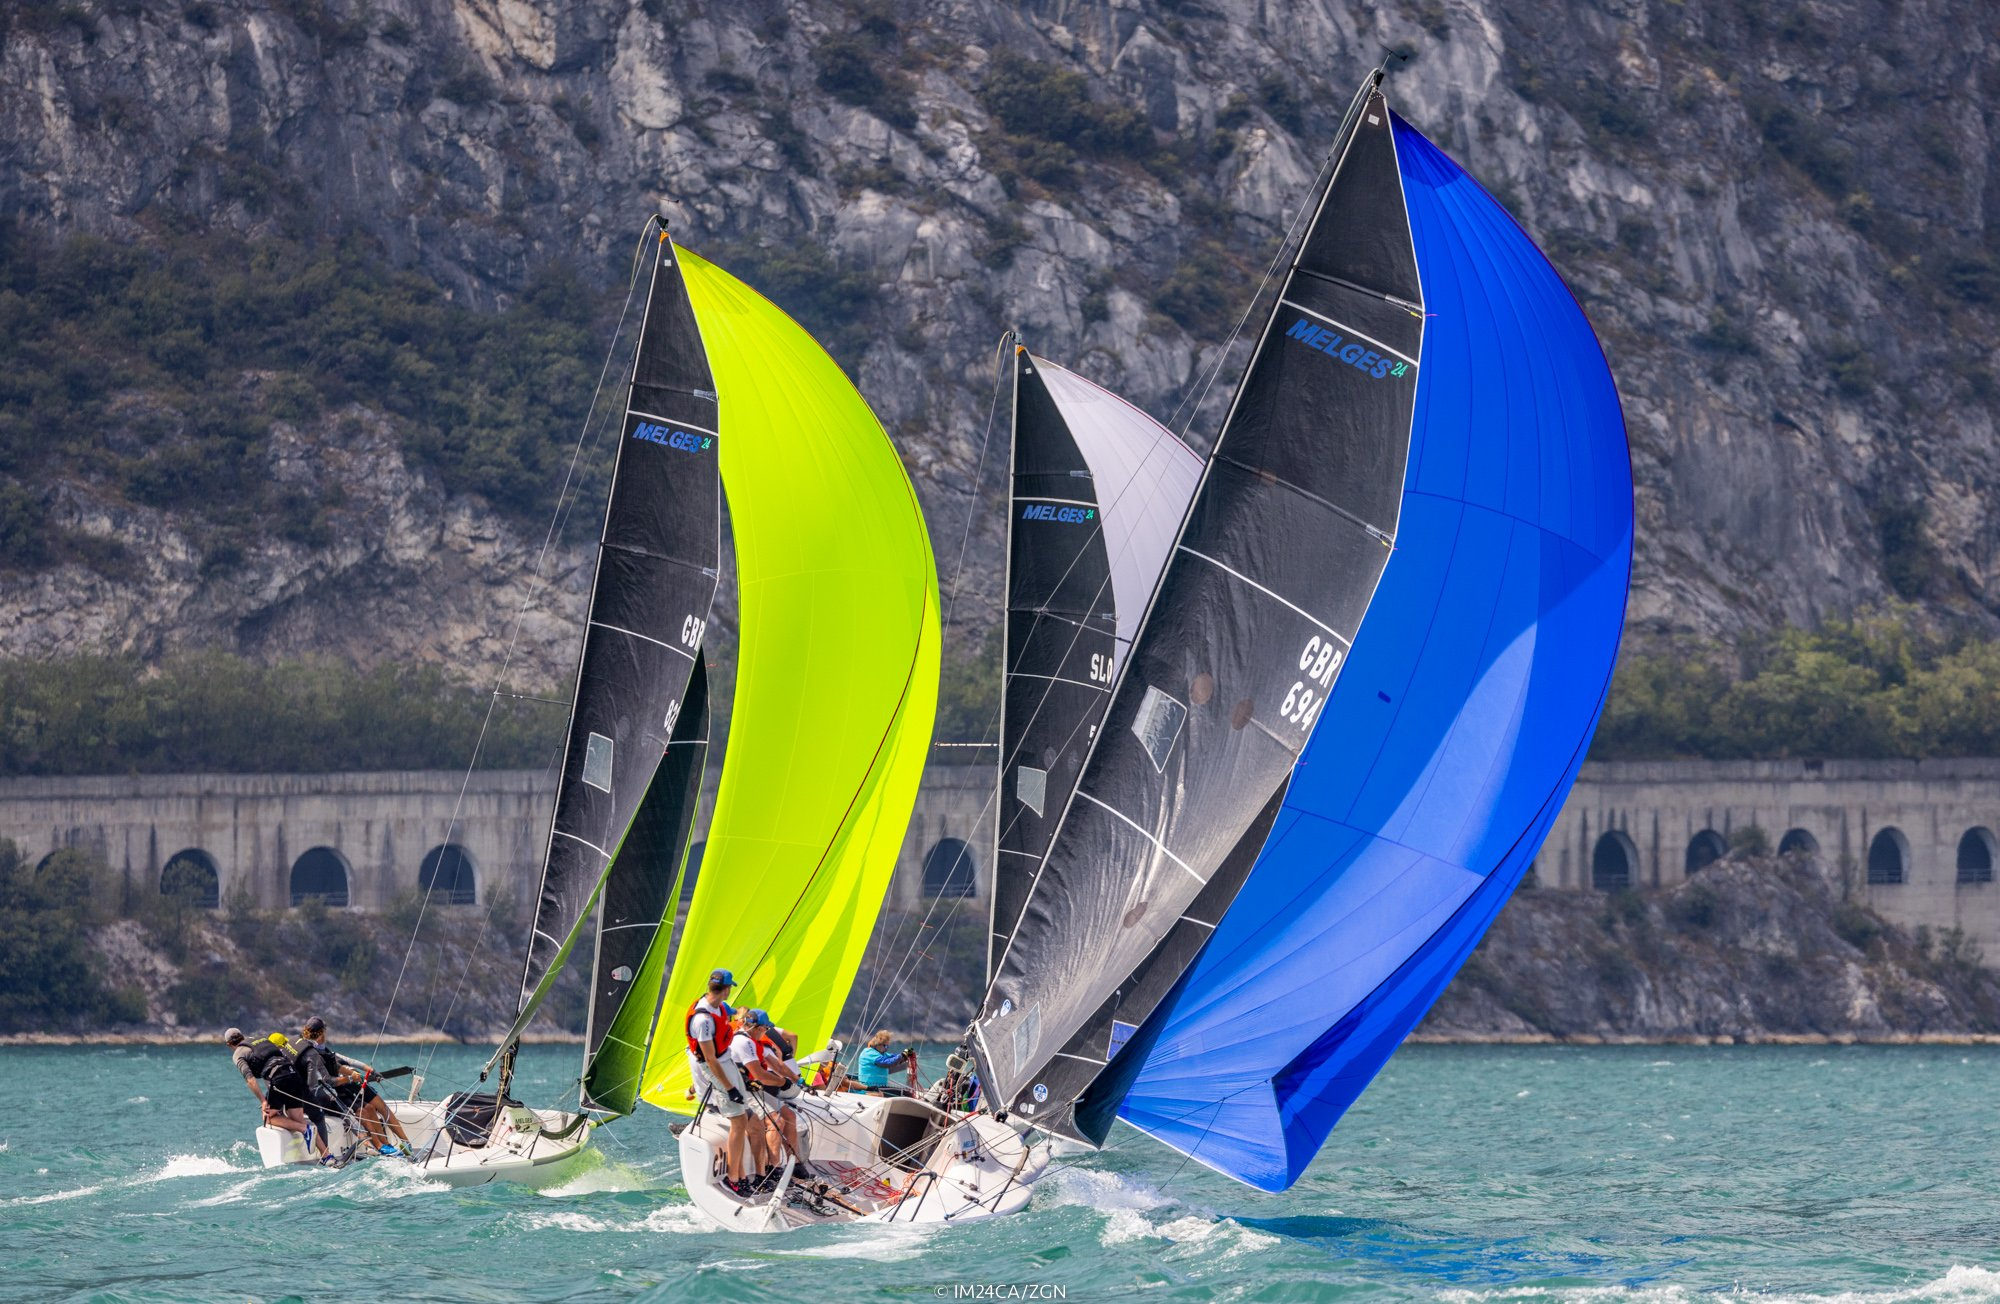  Melges 24  European Sailing Series  Act 4  Riva ITA  Final results